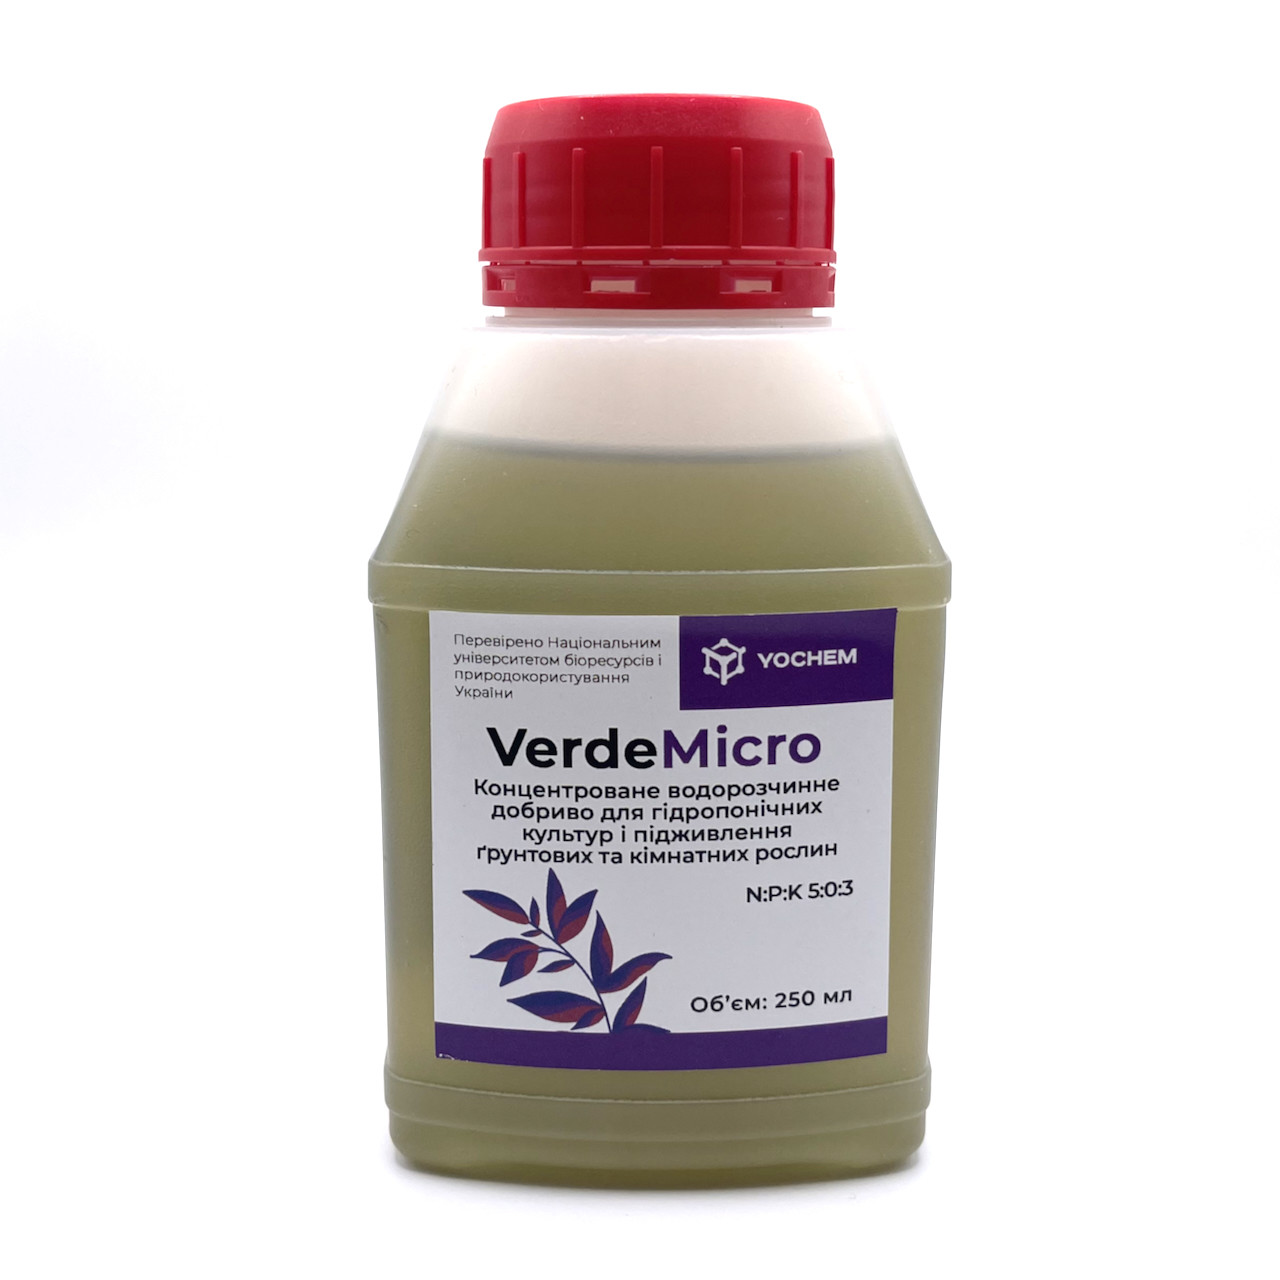 Концентроване водорозчинне добриво VerdeMicro (250мл) для гідропонічних культур і підживлення ґрунтових та кімнатних рослин